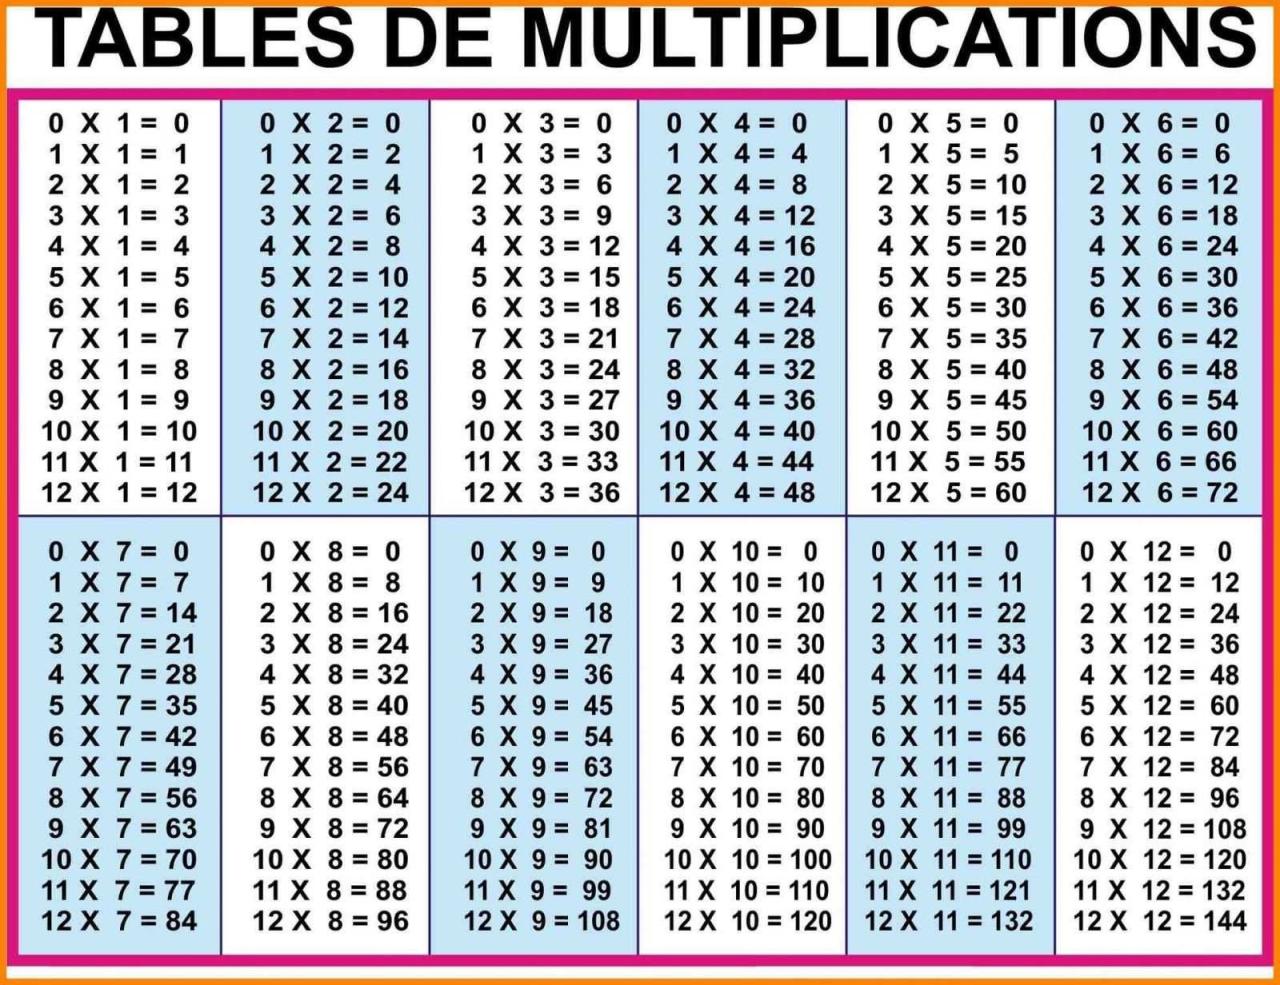 Printable Times Table Chart 1-20